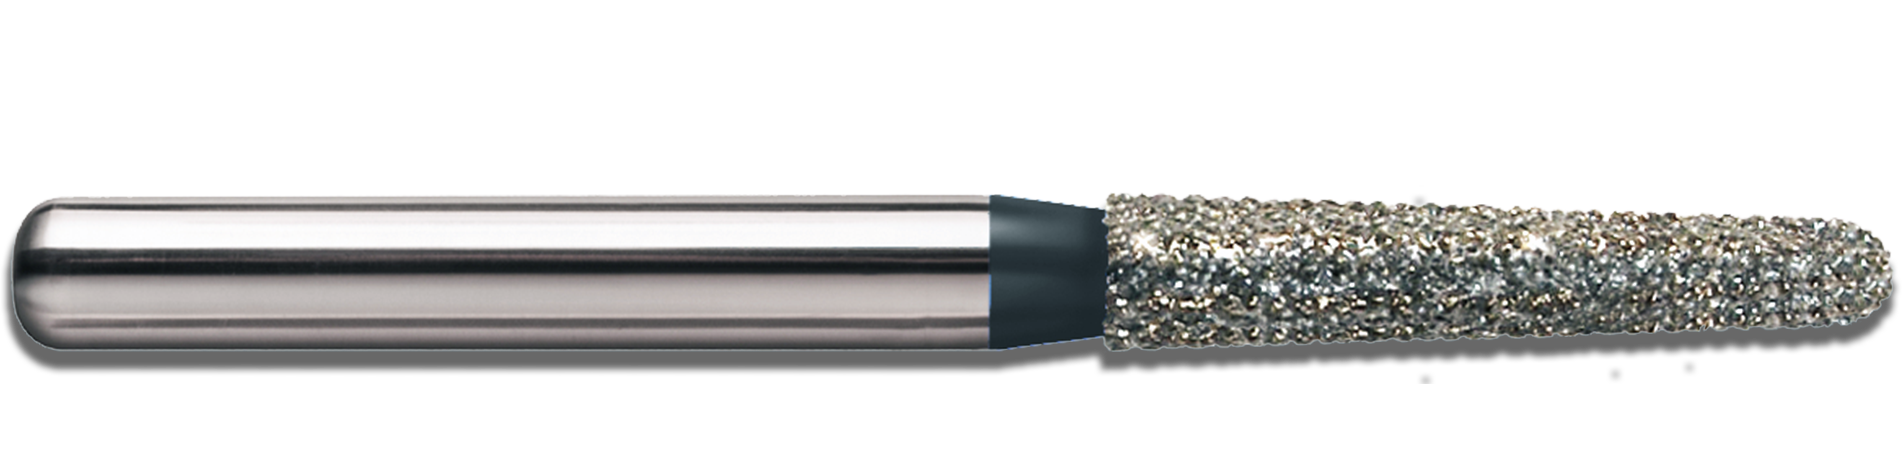 neodiamond